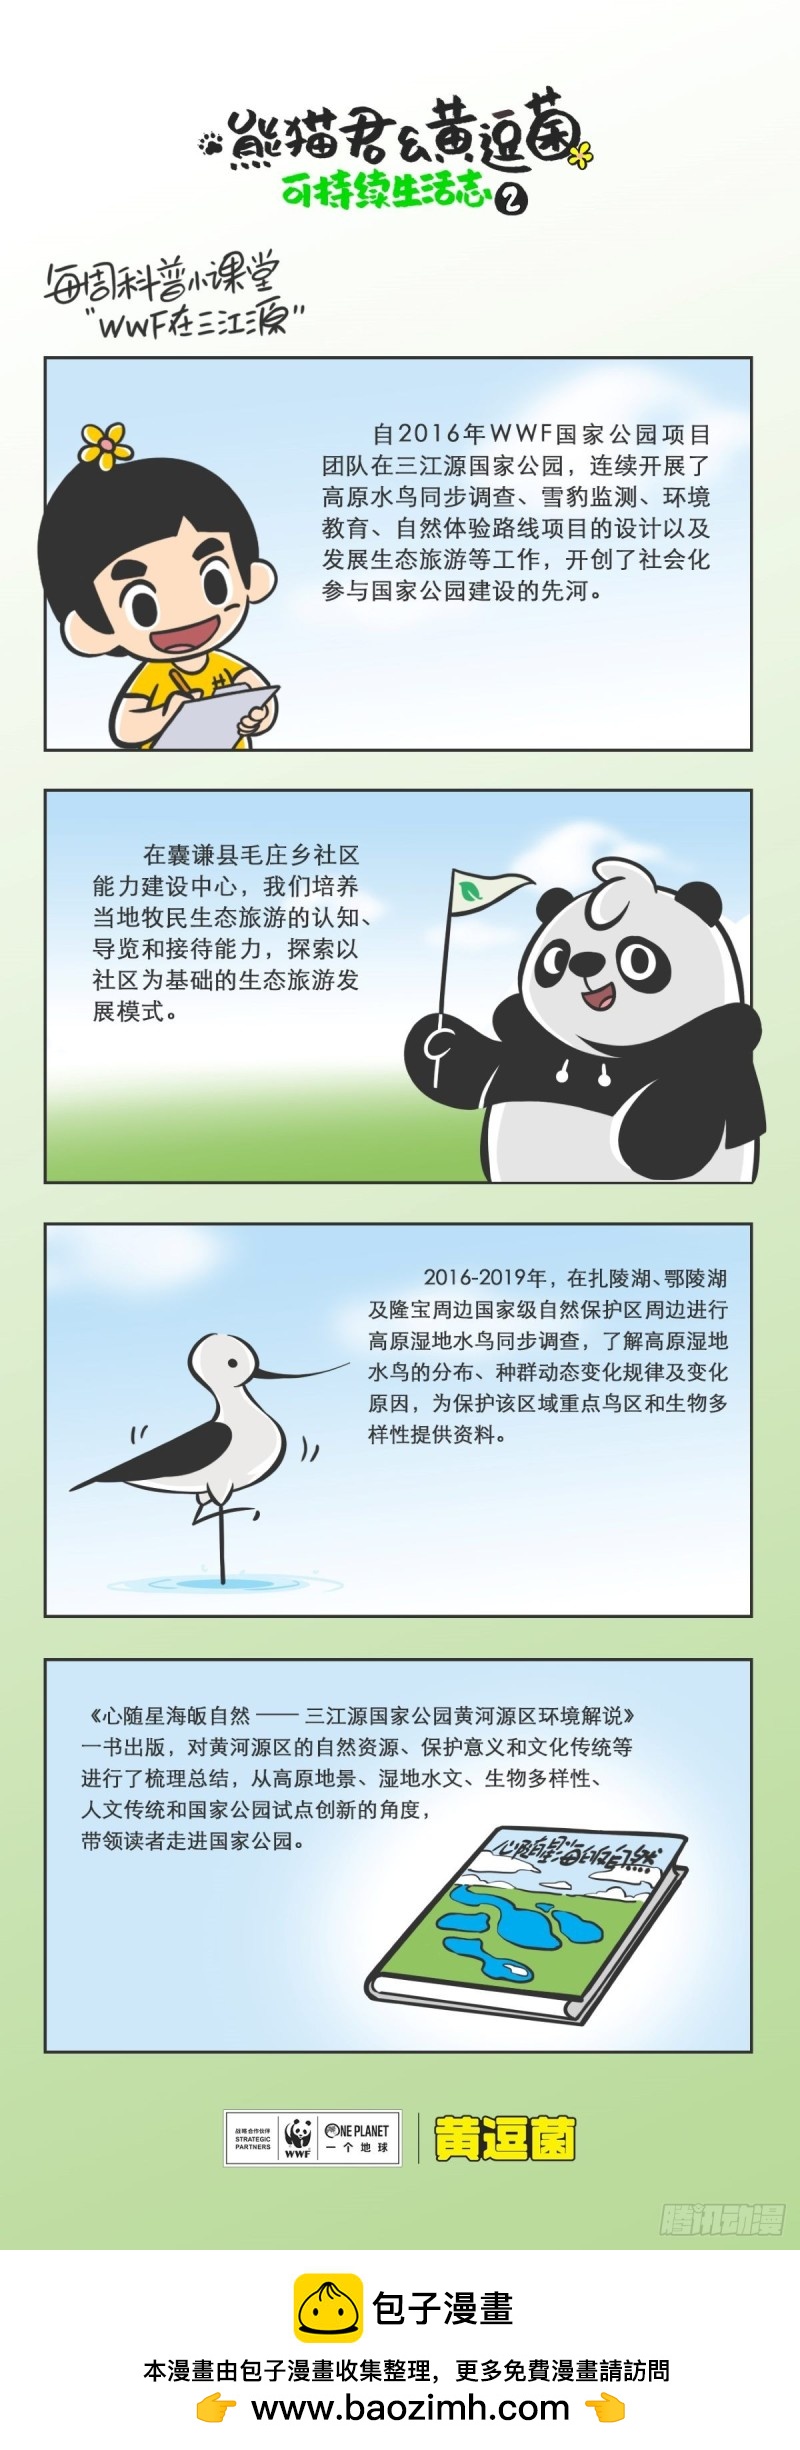 熊貓君和黃逗菌可持續生活志II - 科普番外——WWF在三江源 - 1